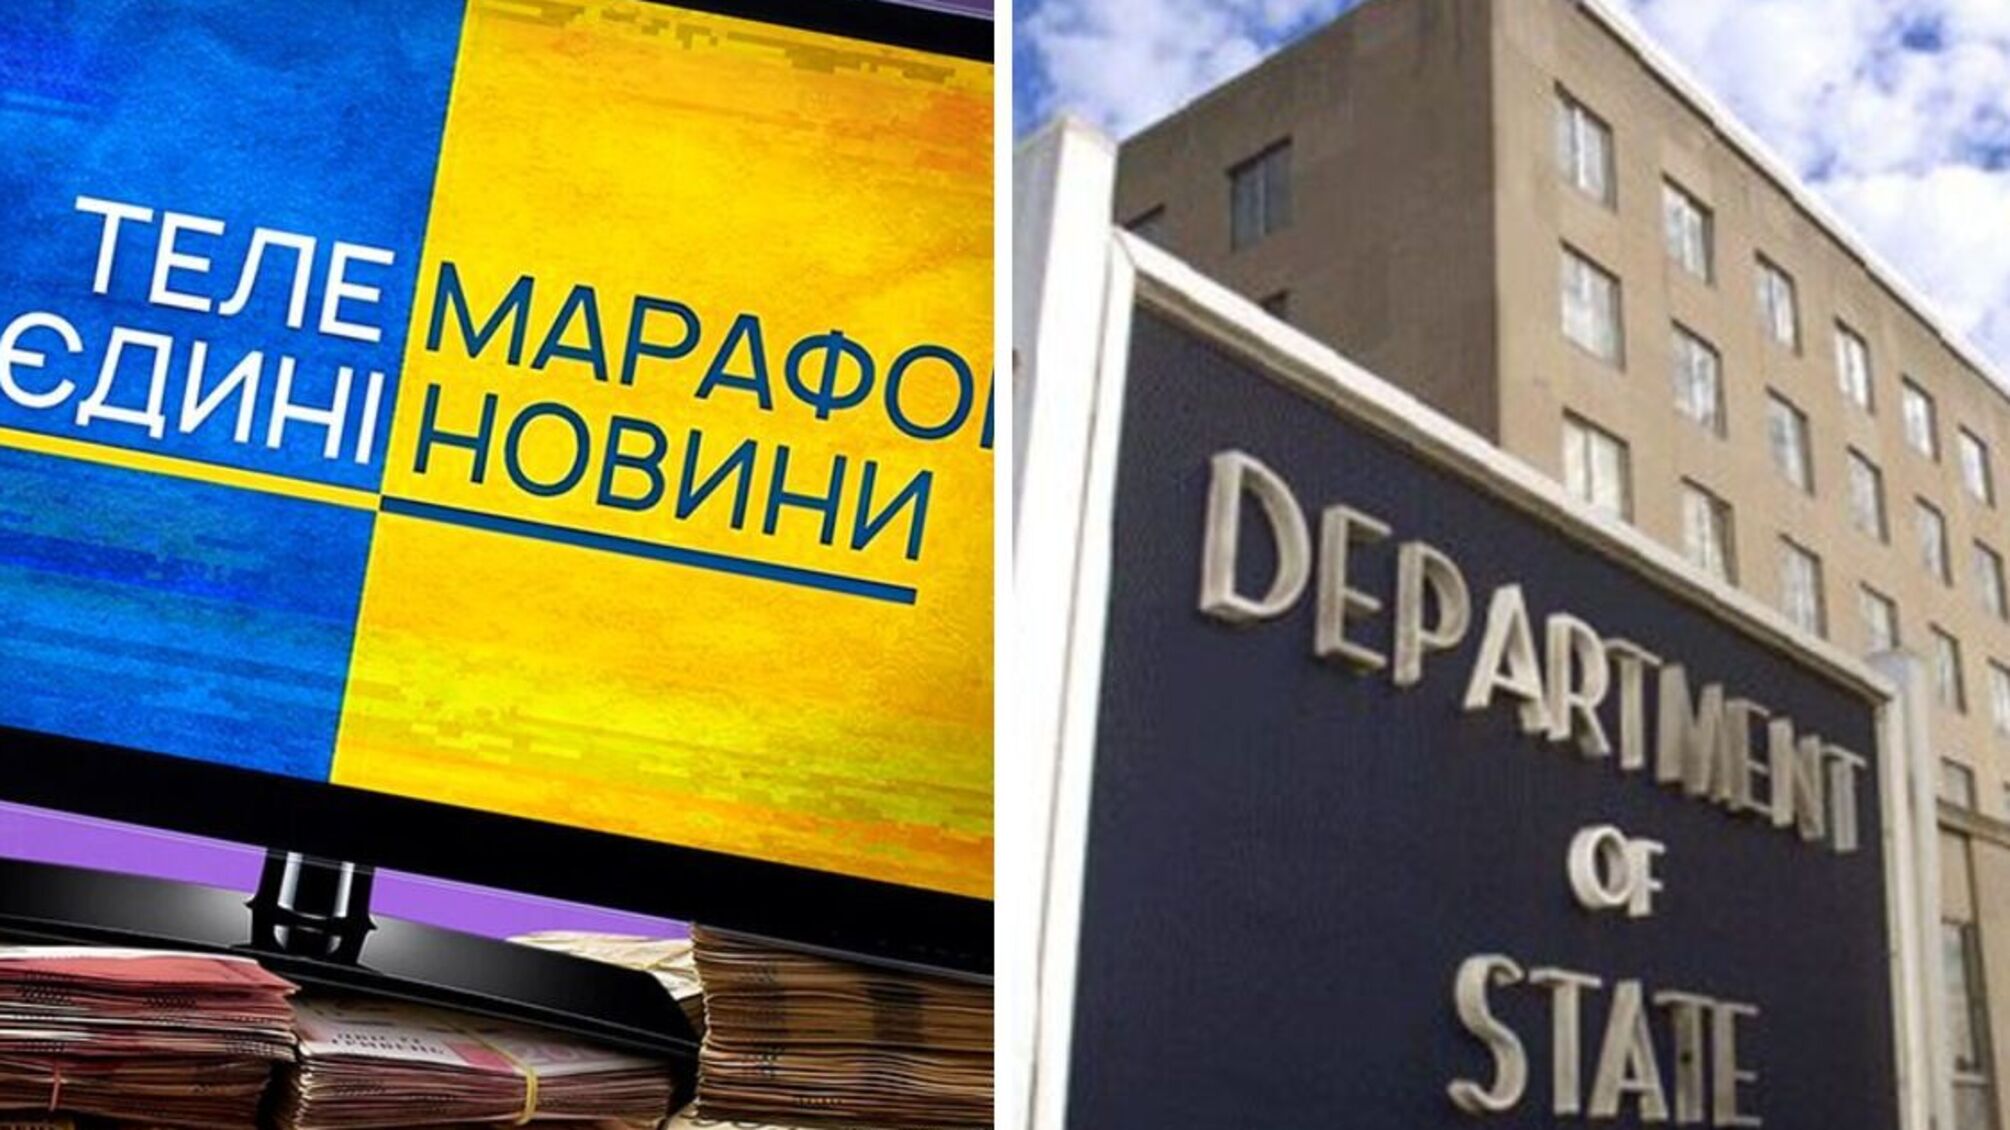 Национальный телемарафон попал в отчет Госдепа США из-за нарушений прав человека в Украине